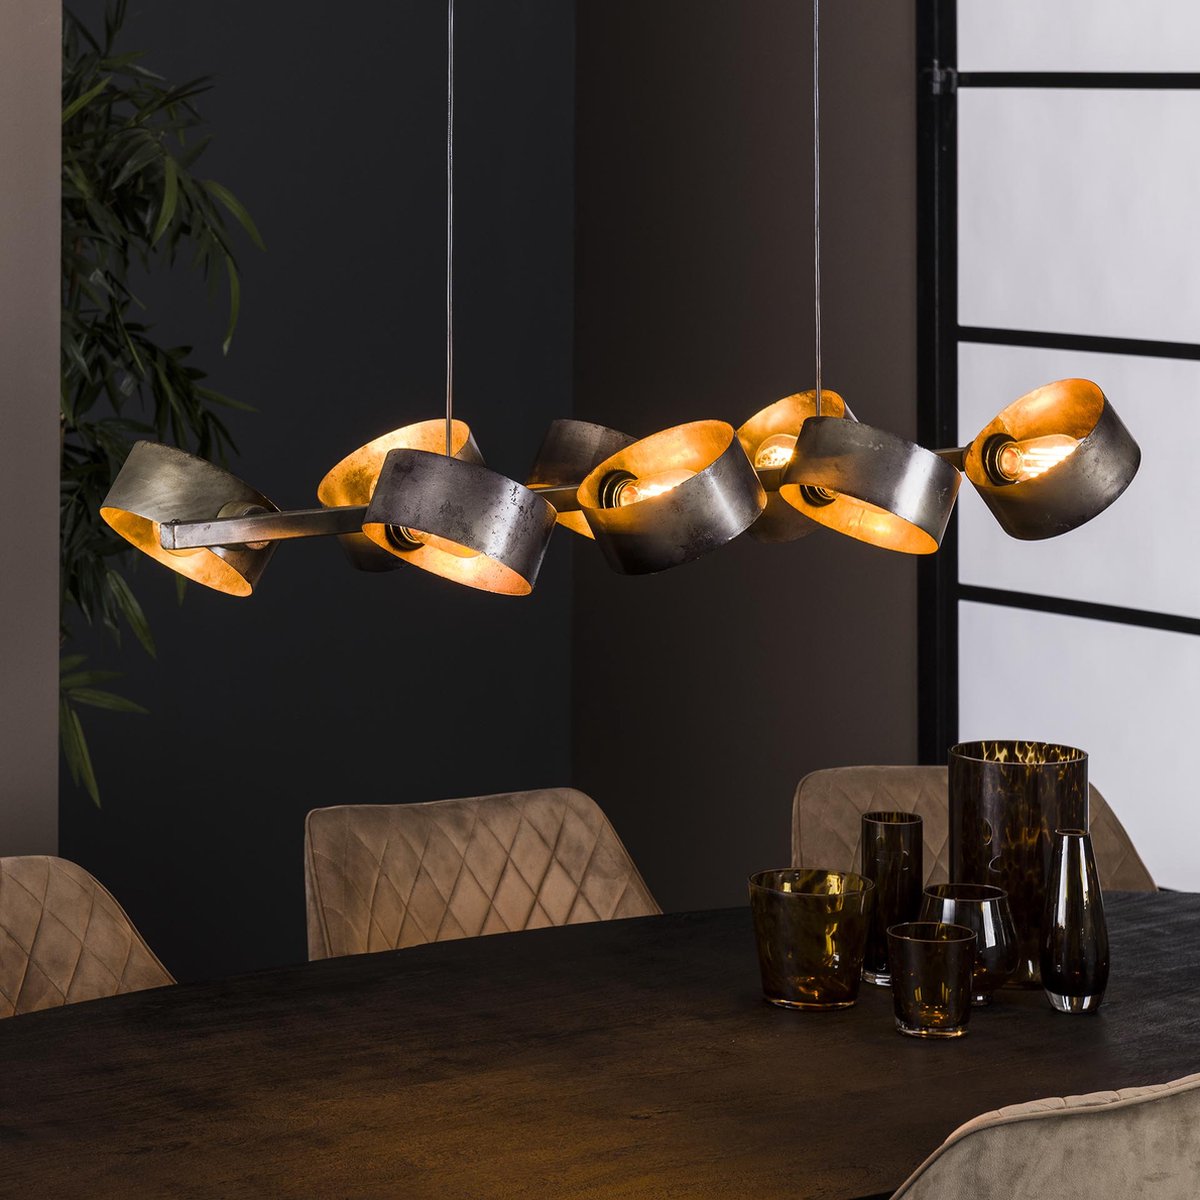 Hanglamp Rotar oud zilver | 8 lichts | grijs / zilver / zwart | metaal | in hoogte verstelbaar tot 150 cm | eetkamer / eettafel lamp | modern / sfeervol design